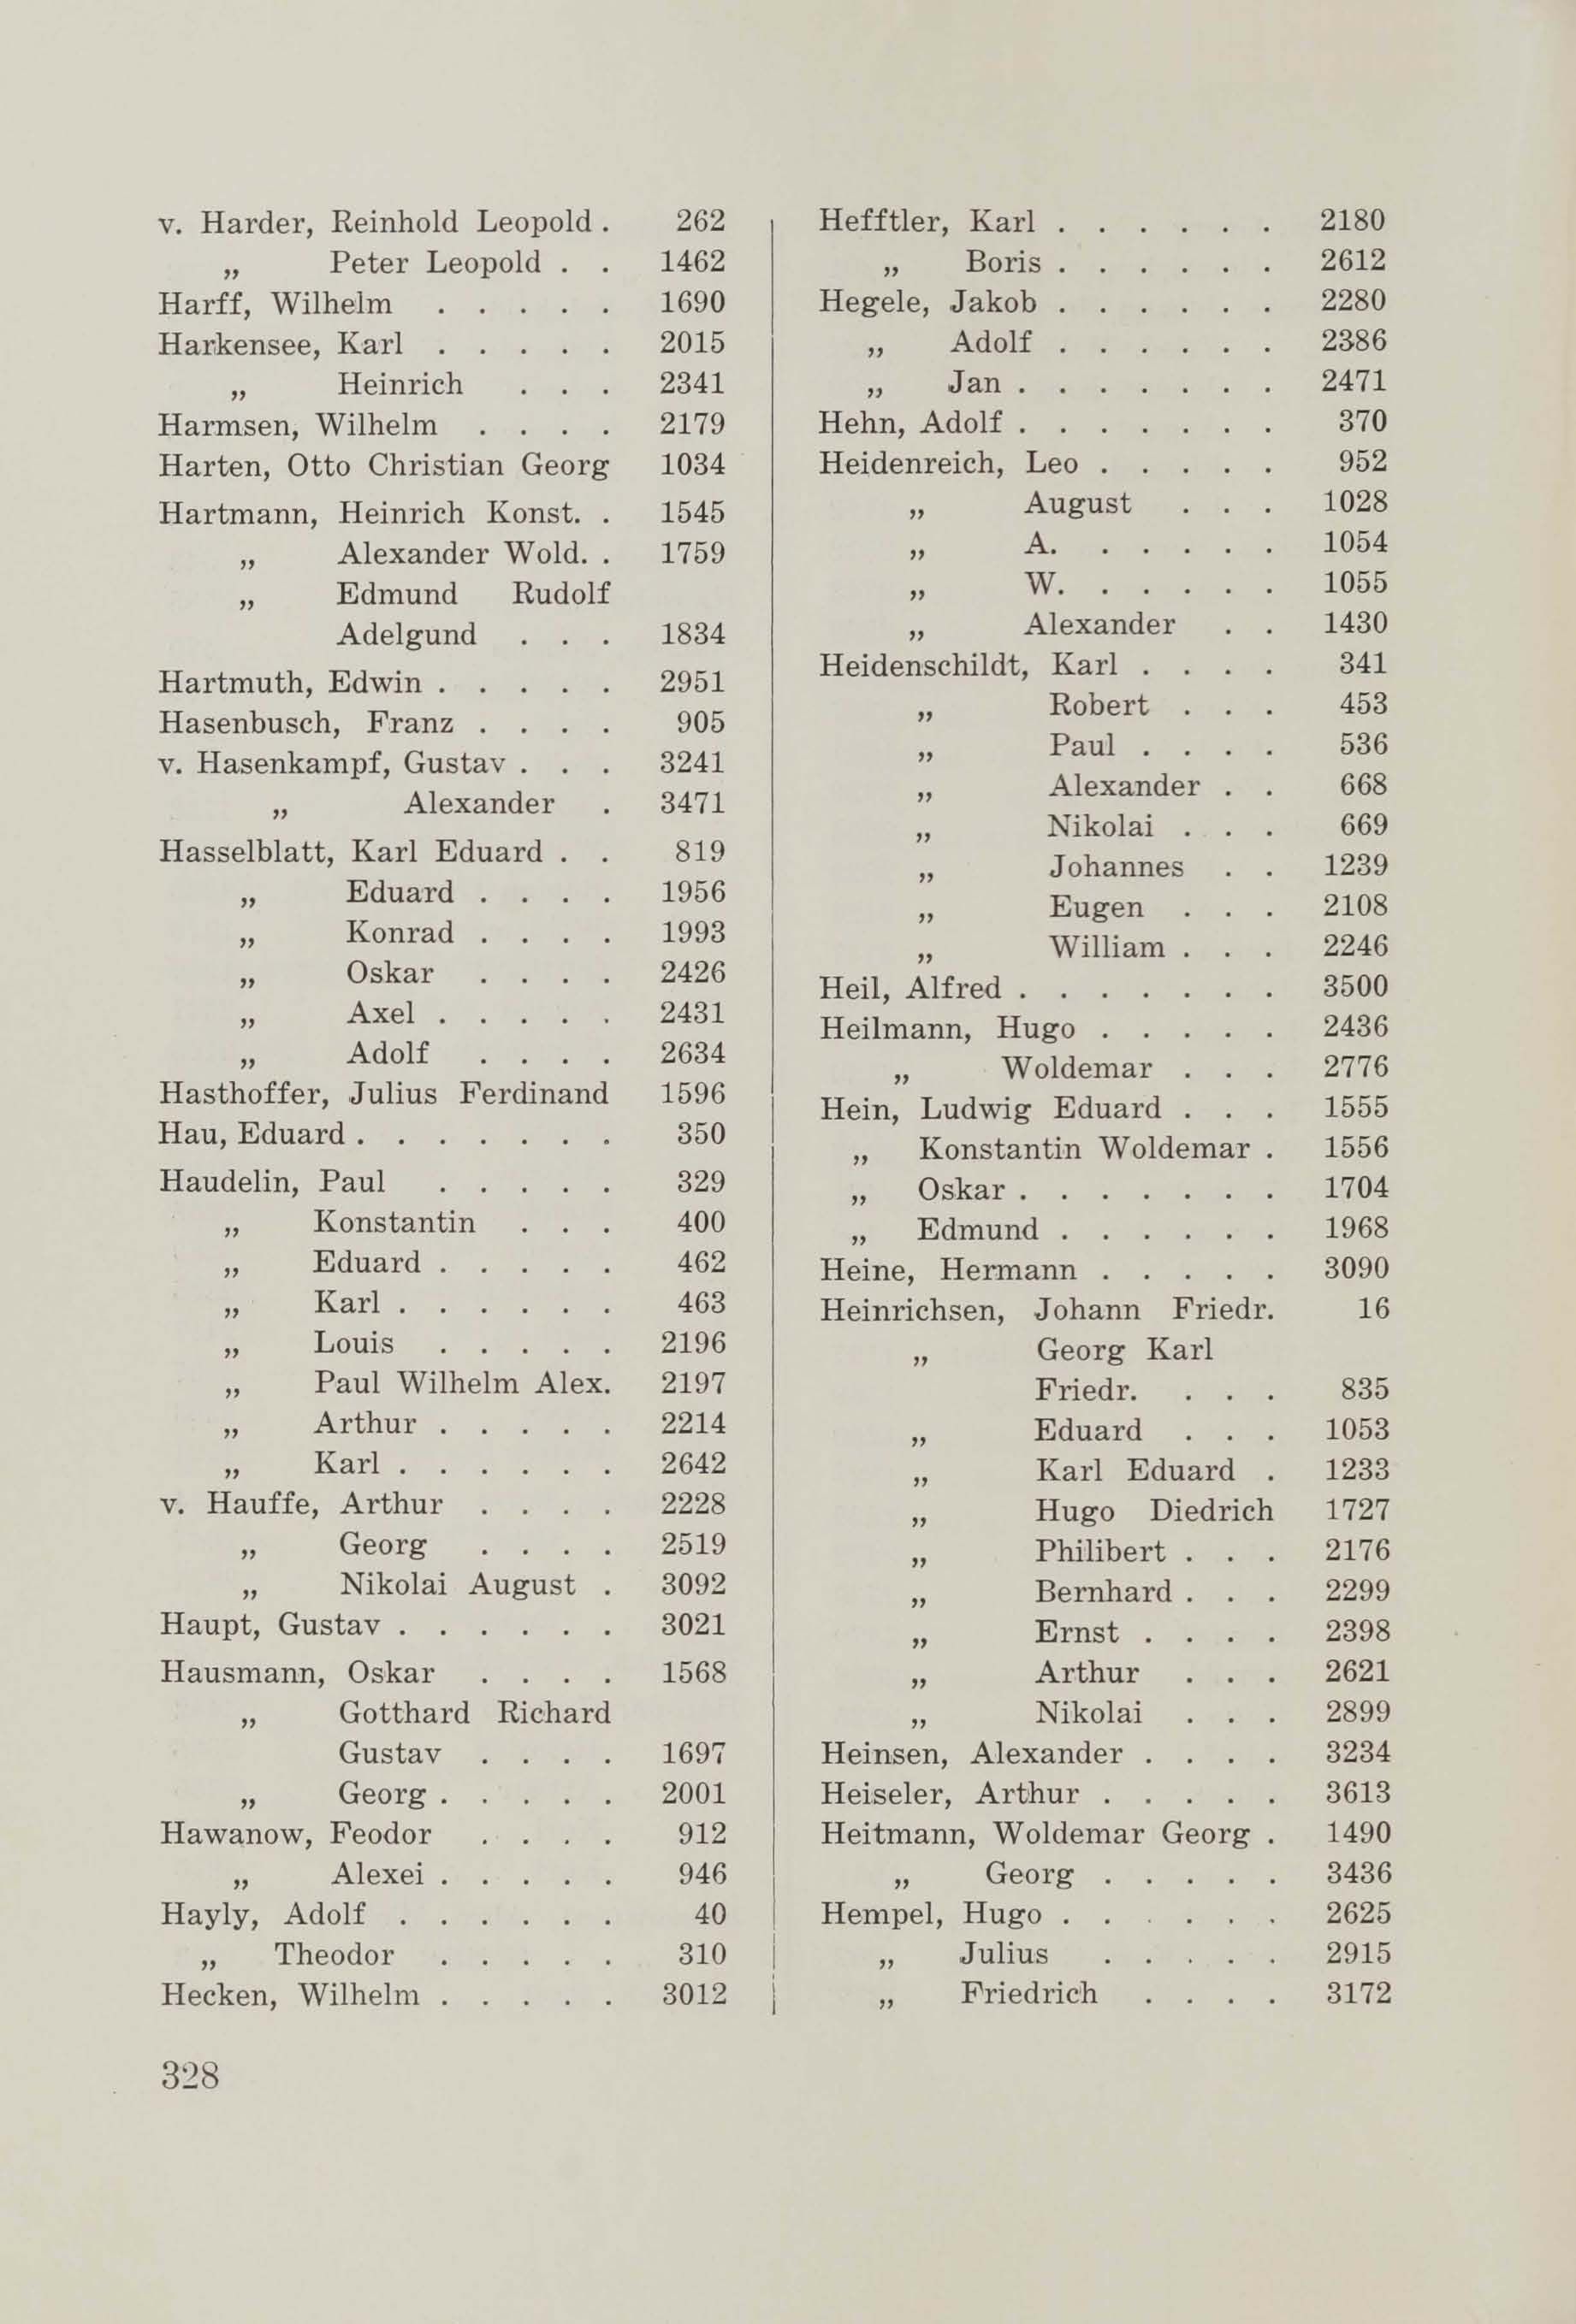 Schüler-Verzeichnis des Revalschen Gouvernements-Gymnasiums 1805–1890 (1931) | 338. (328) Main body of text